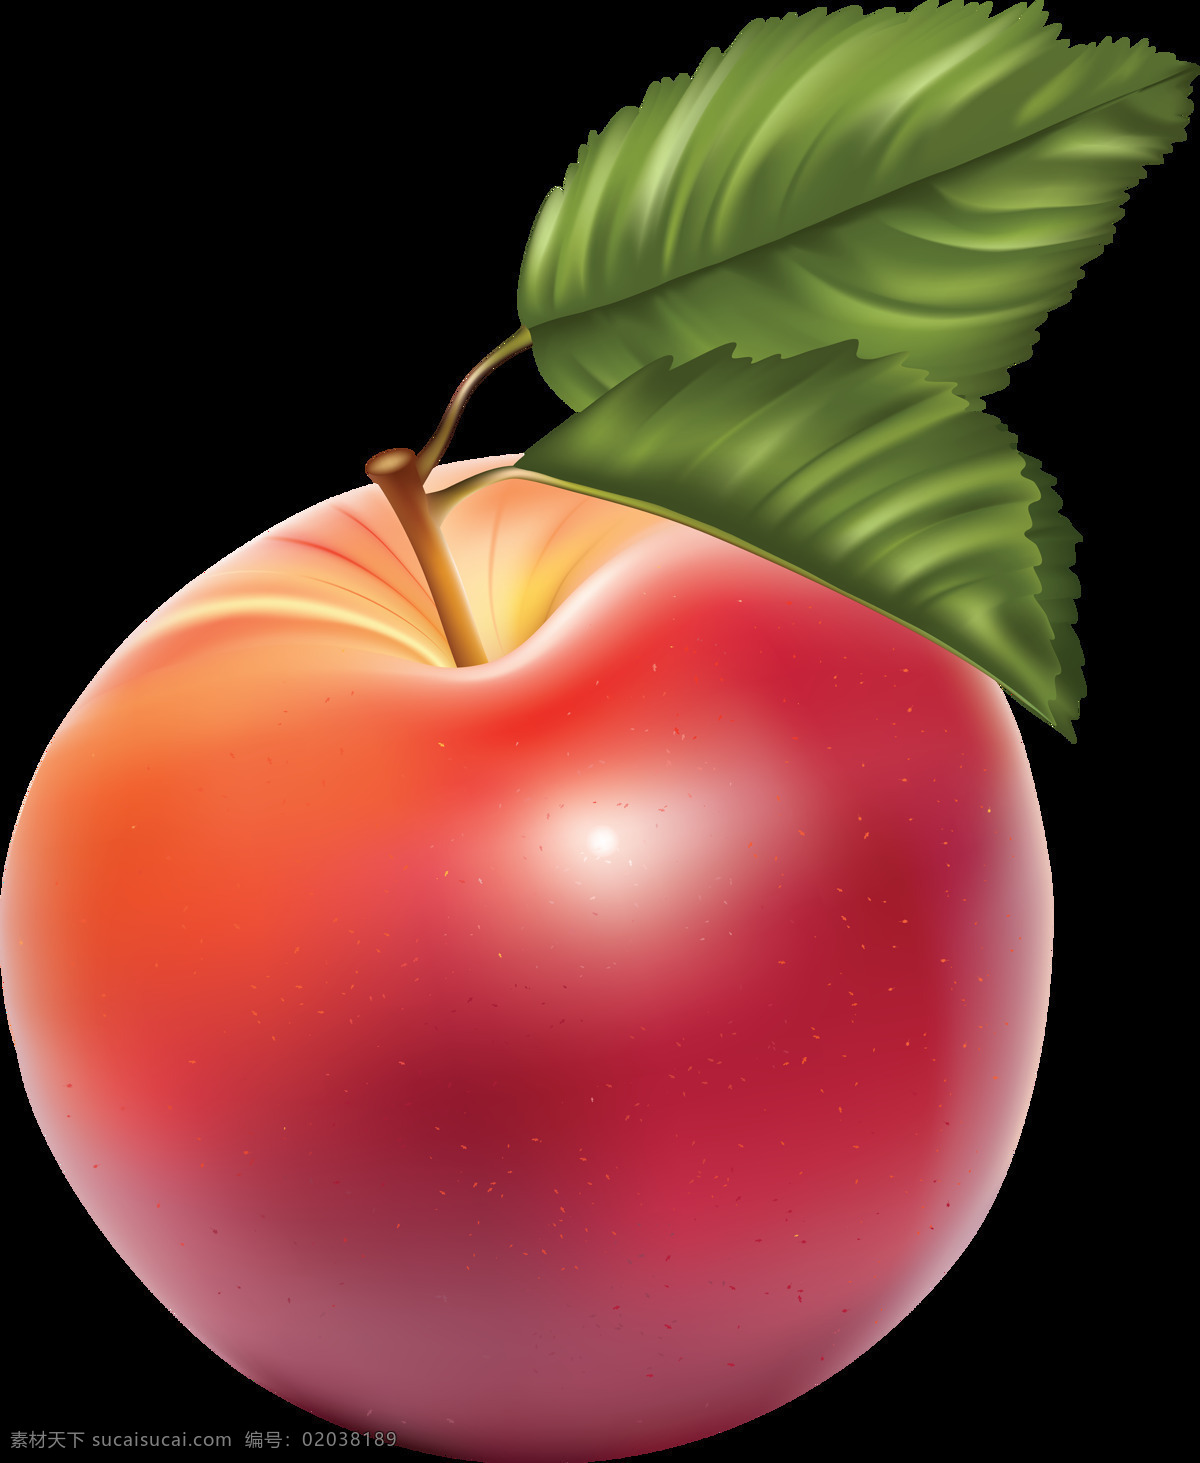 漂亮 真实 苹果 免 抠 透明 图 层 青苹果 苹果卡通图片 苹果logo 苹果简笔画 壁纸高清 大苹果 红苹果 苹果梨树 苹果商标 金毛苹果 青苹果榨汁